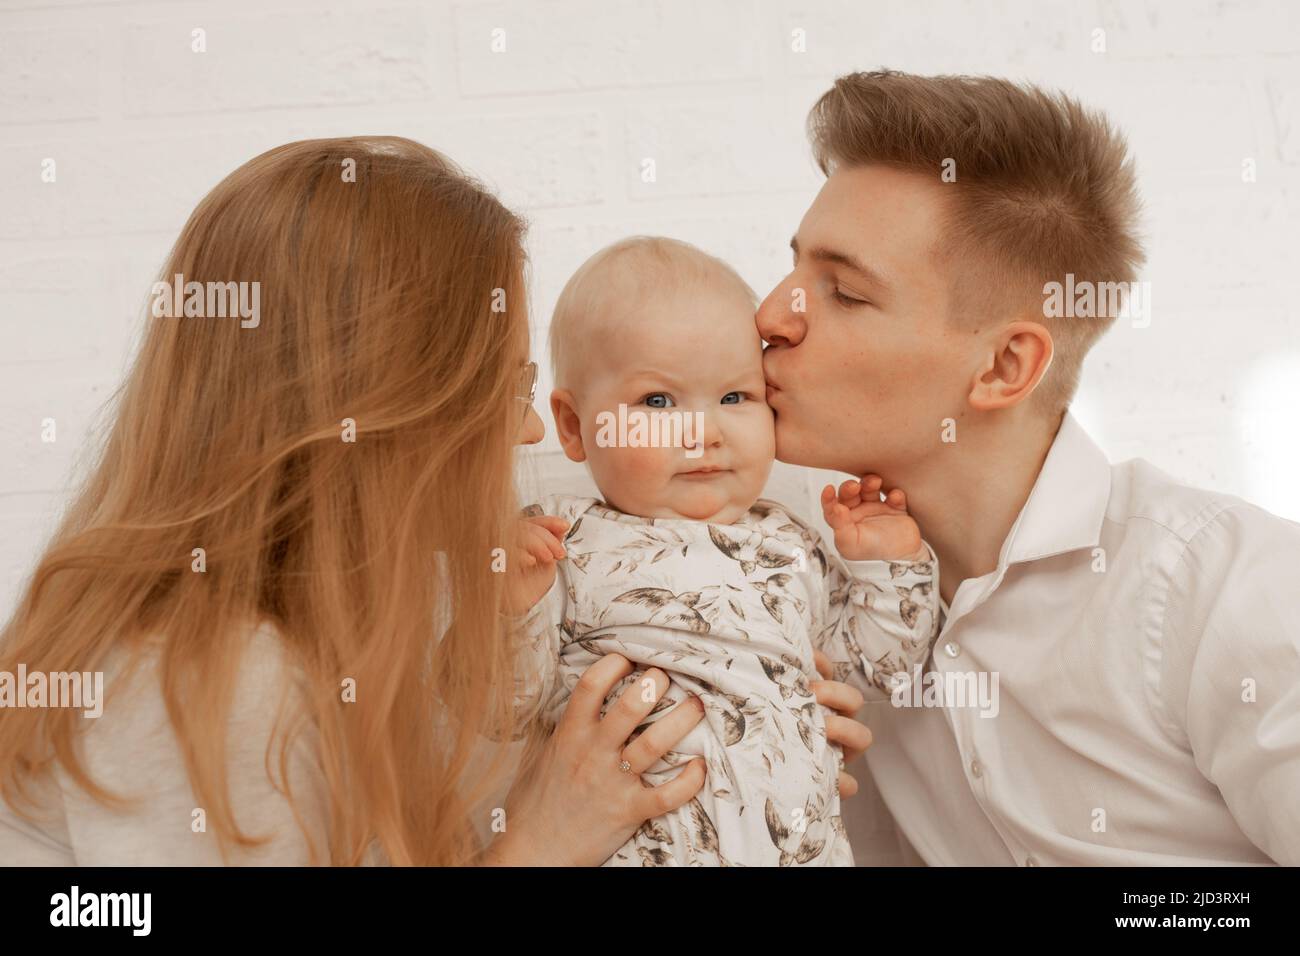 La jeune mère et le père embrassent et embrassent le petit bébé, profiter sur fond blanc. Relation mignon entre parents et enfant en bas âge, copie gratuite Banque D'Images